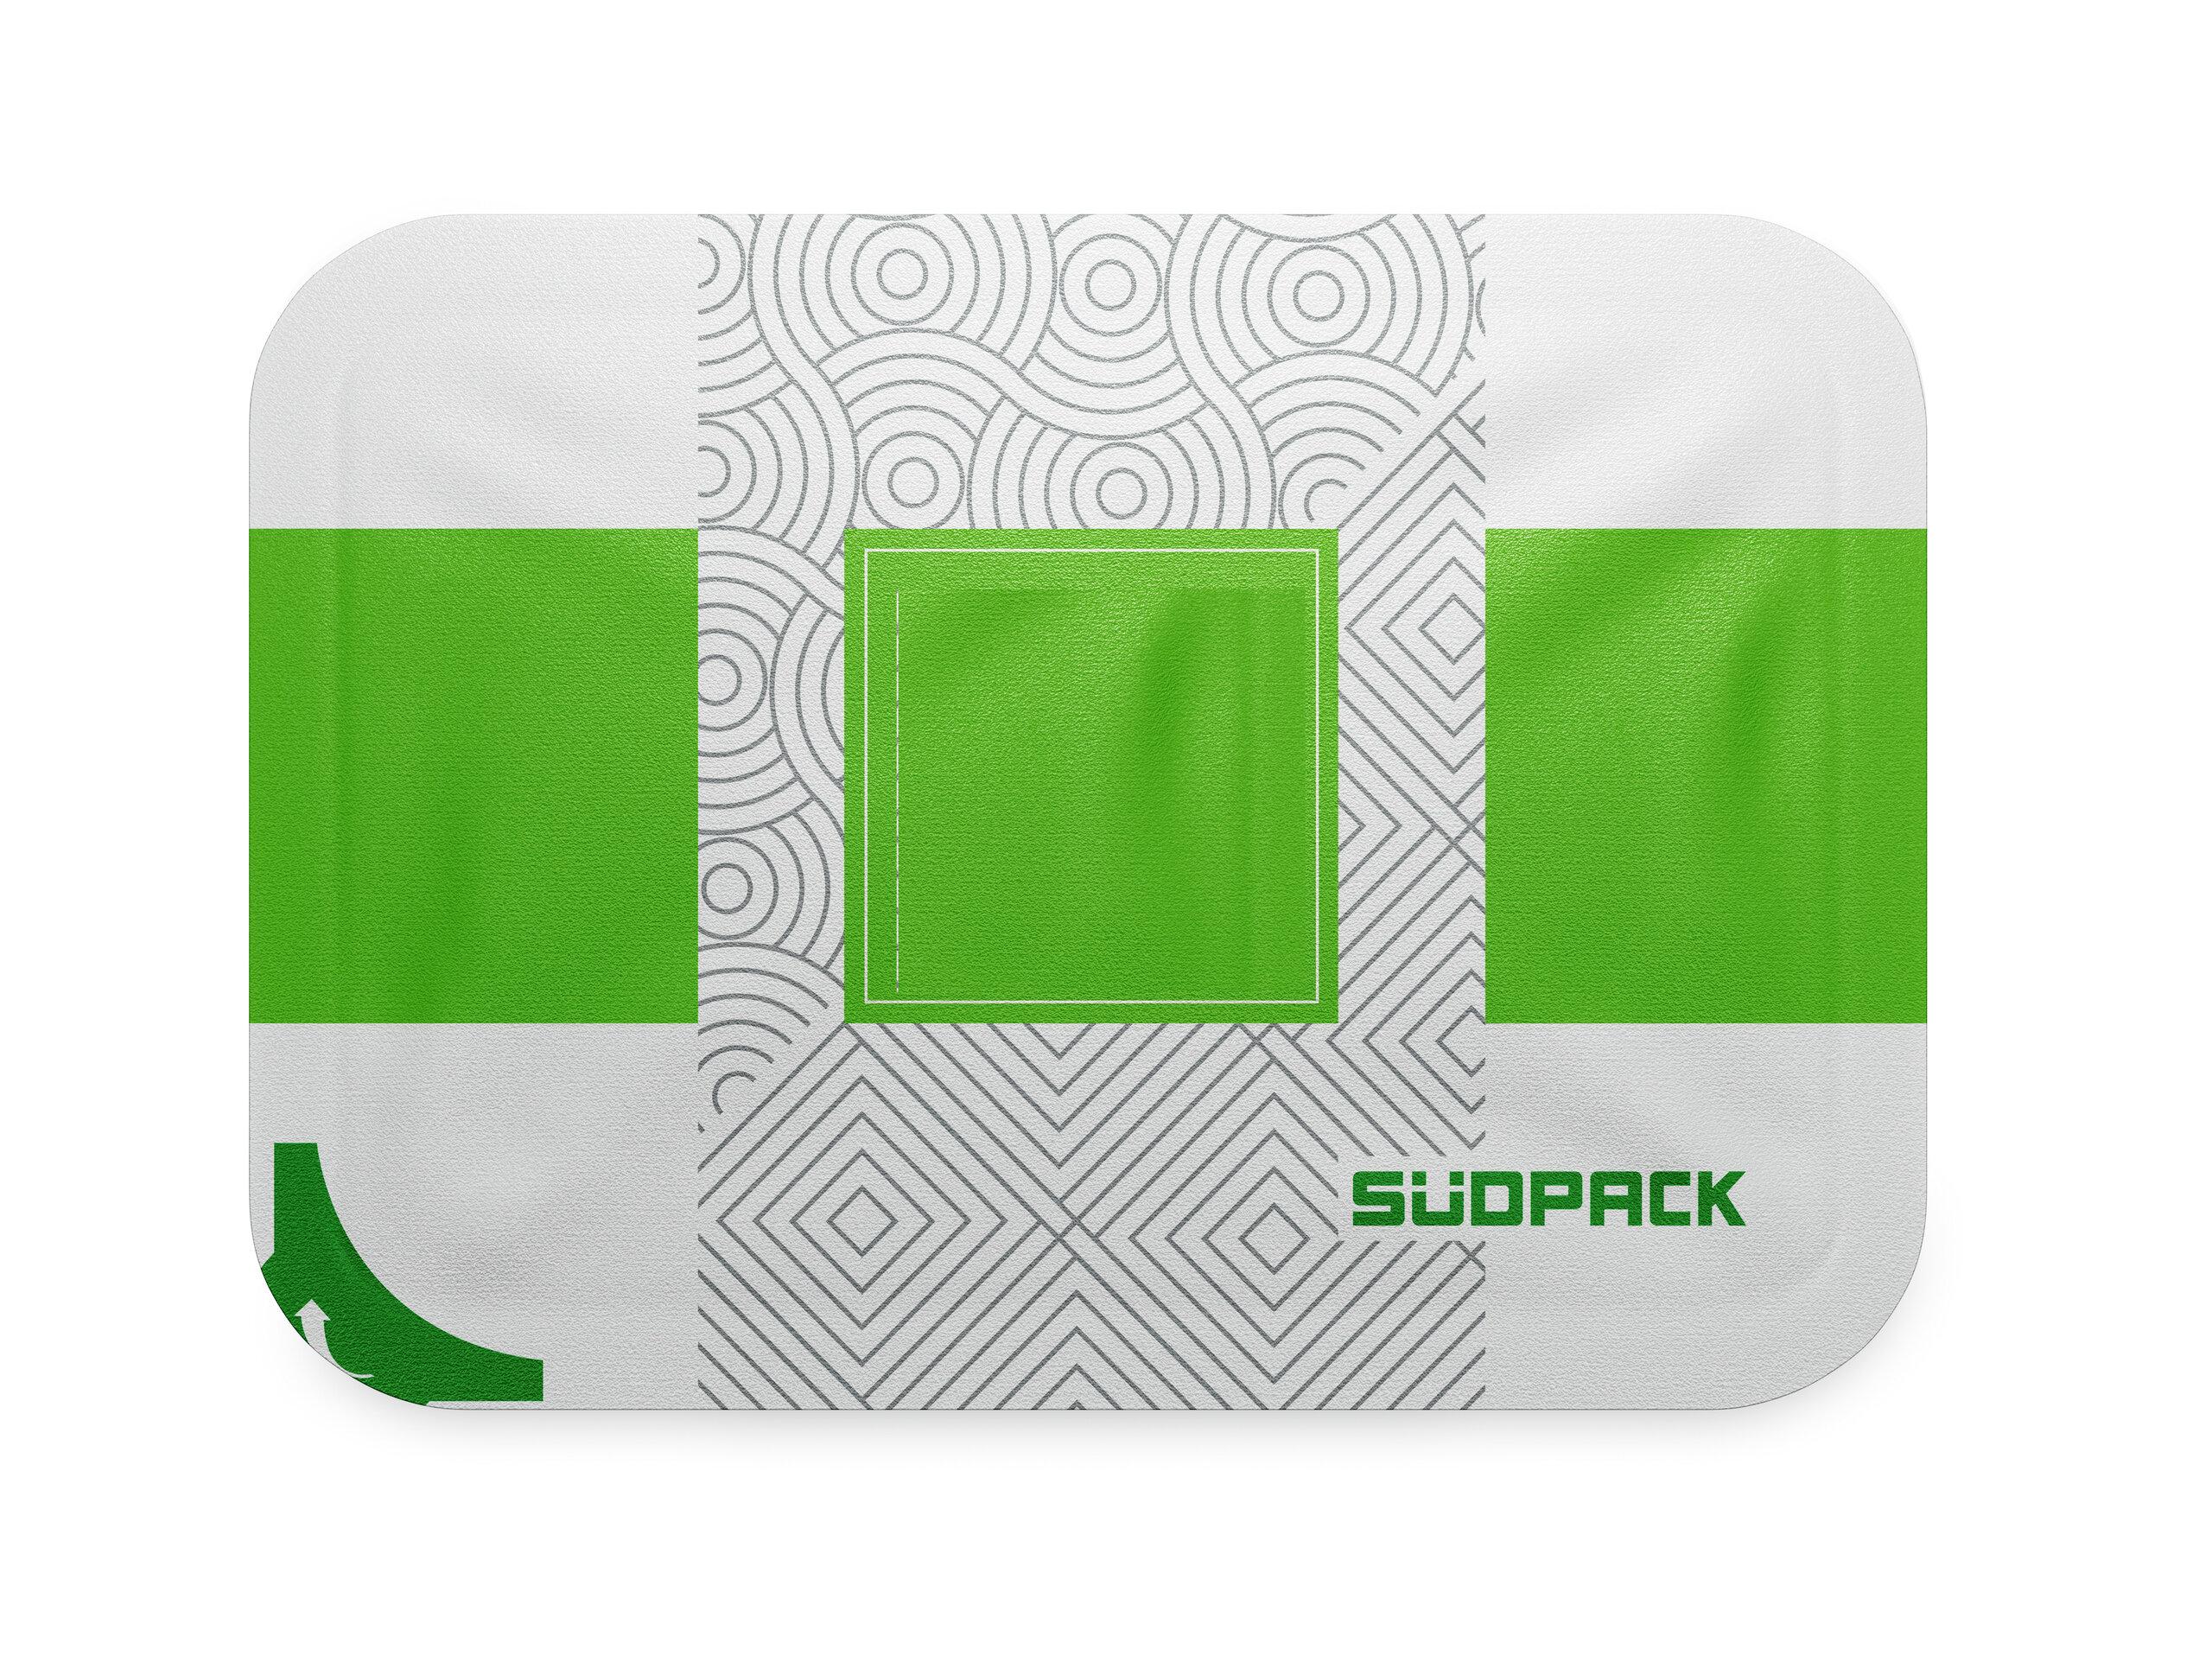 Oberfolie von SÜDPACK für effiziente, sichere und nachhaltige Verpackungslösungen